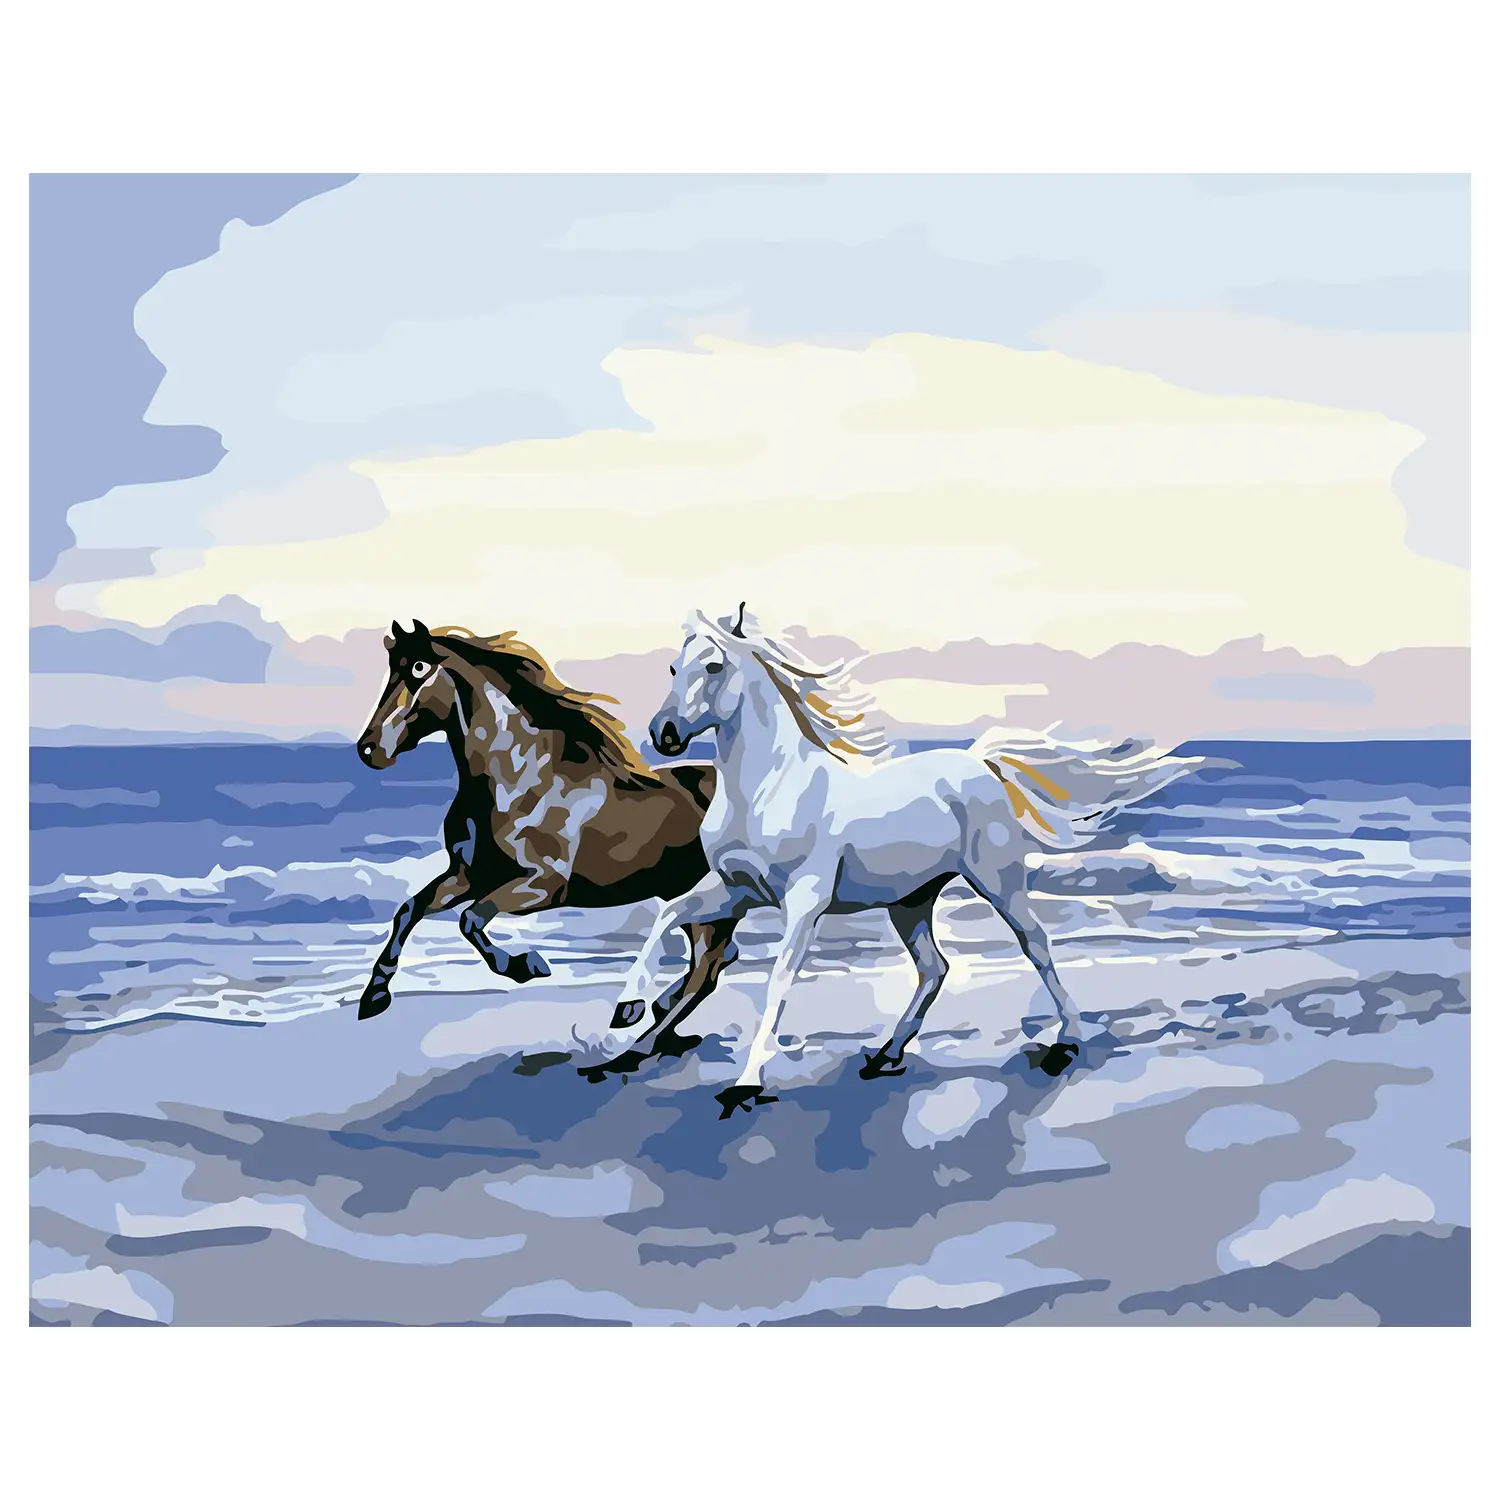 Lienzo con dibujo para pintar con números, de 40x50cm. Diseño caballos en la playa. Incluye pinceles y pinturas necesarias.